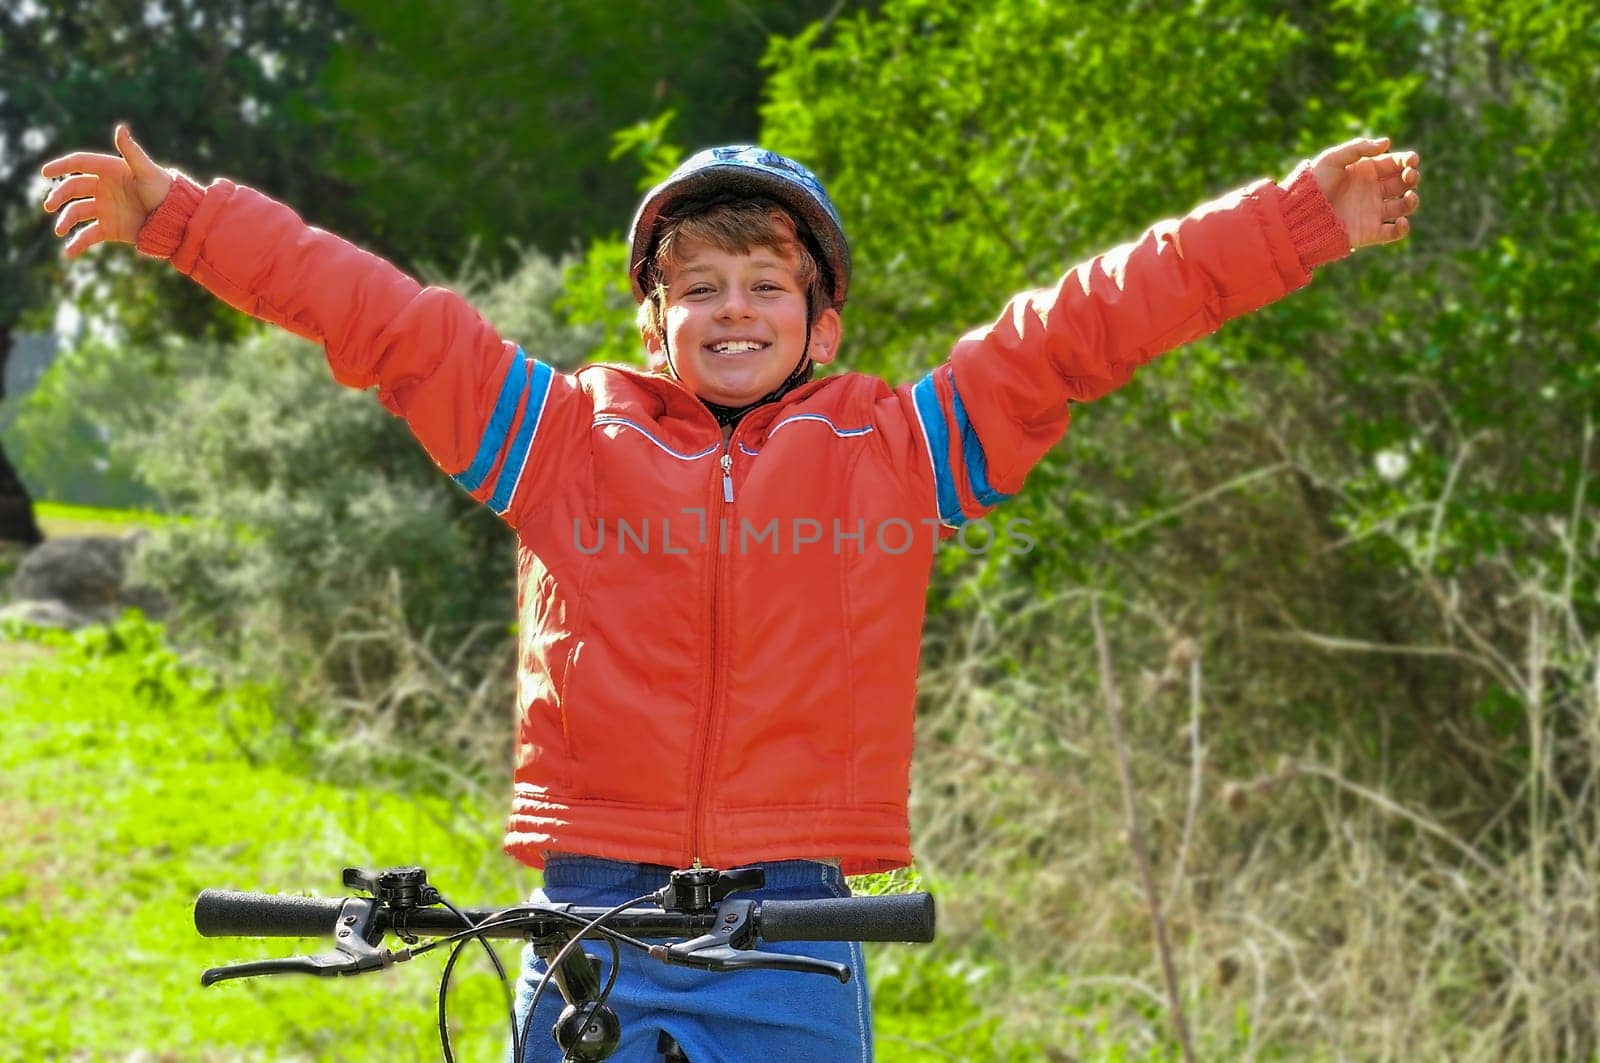 The joy of winning a bike race by ben44